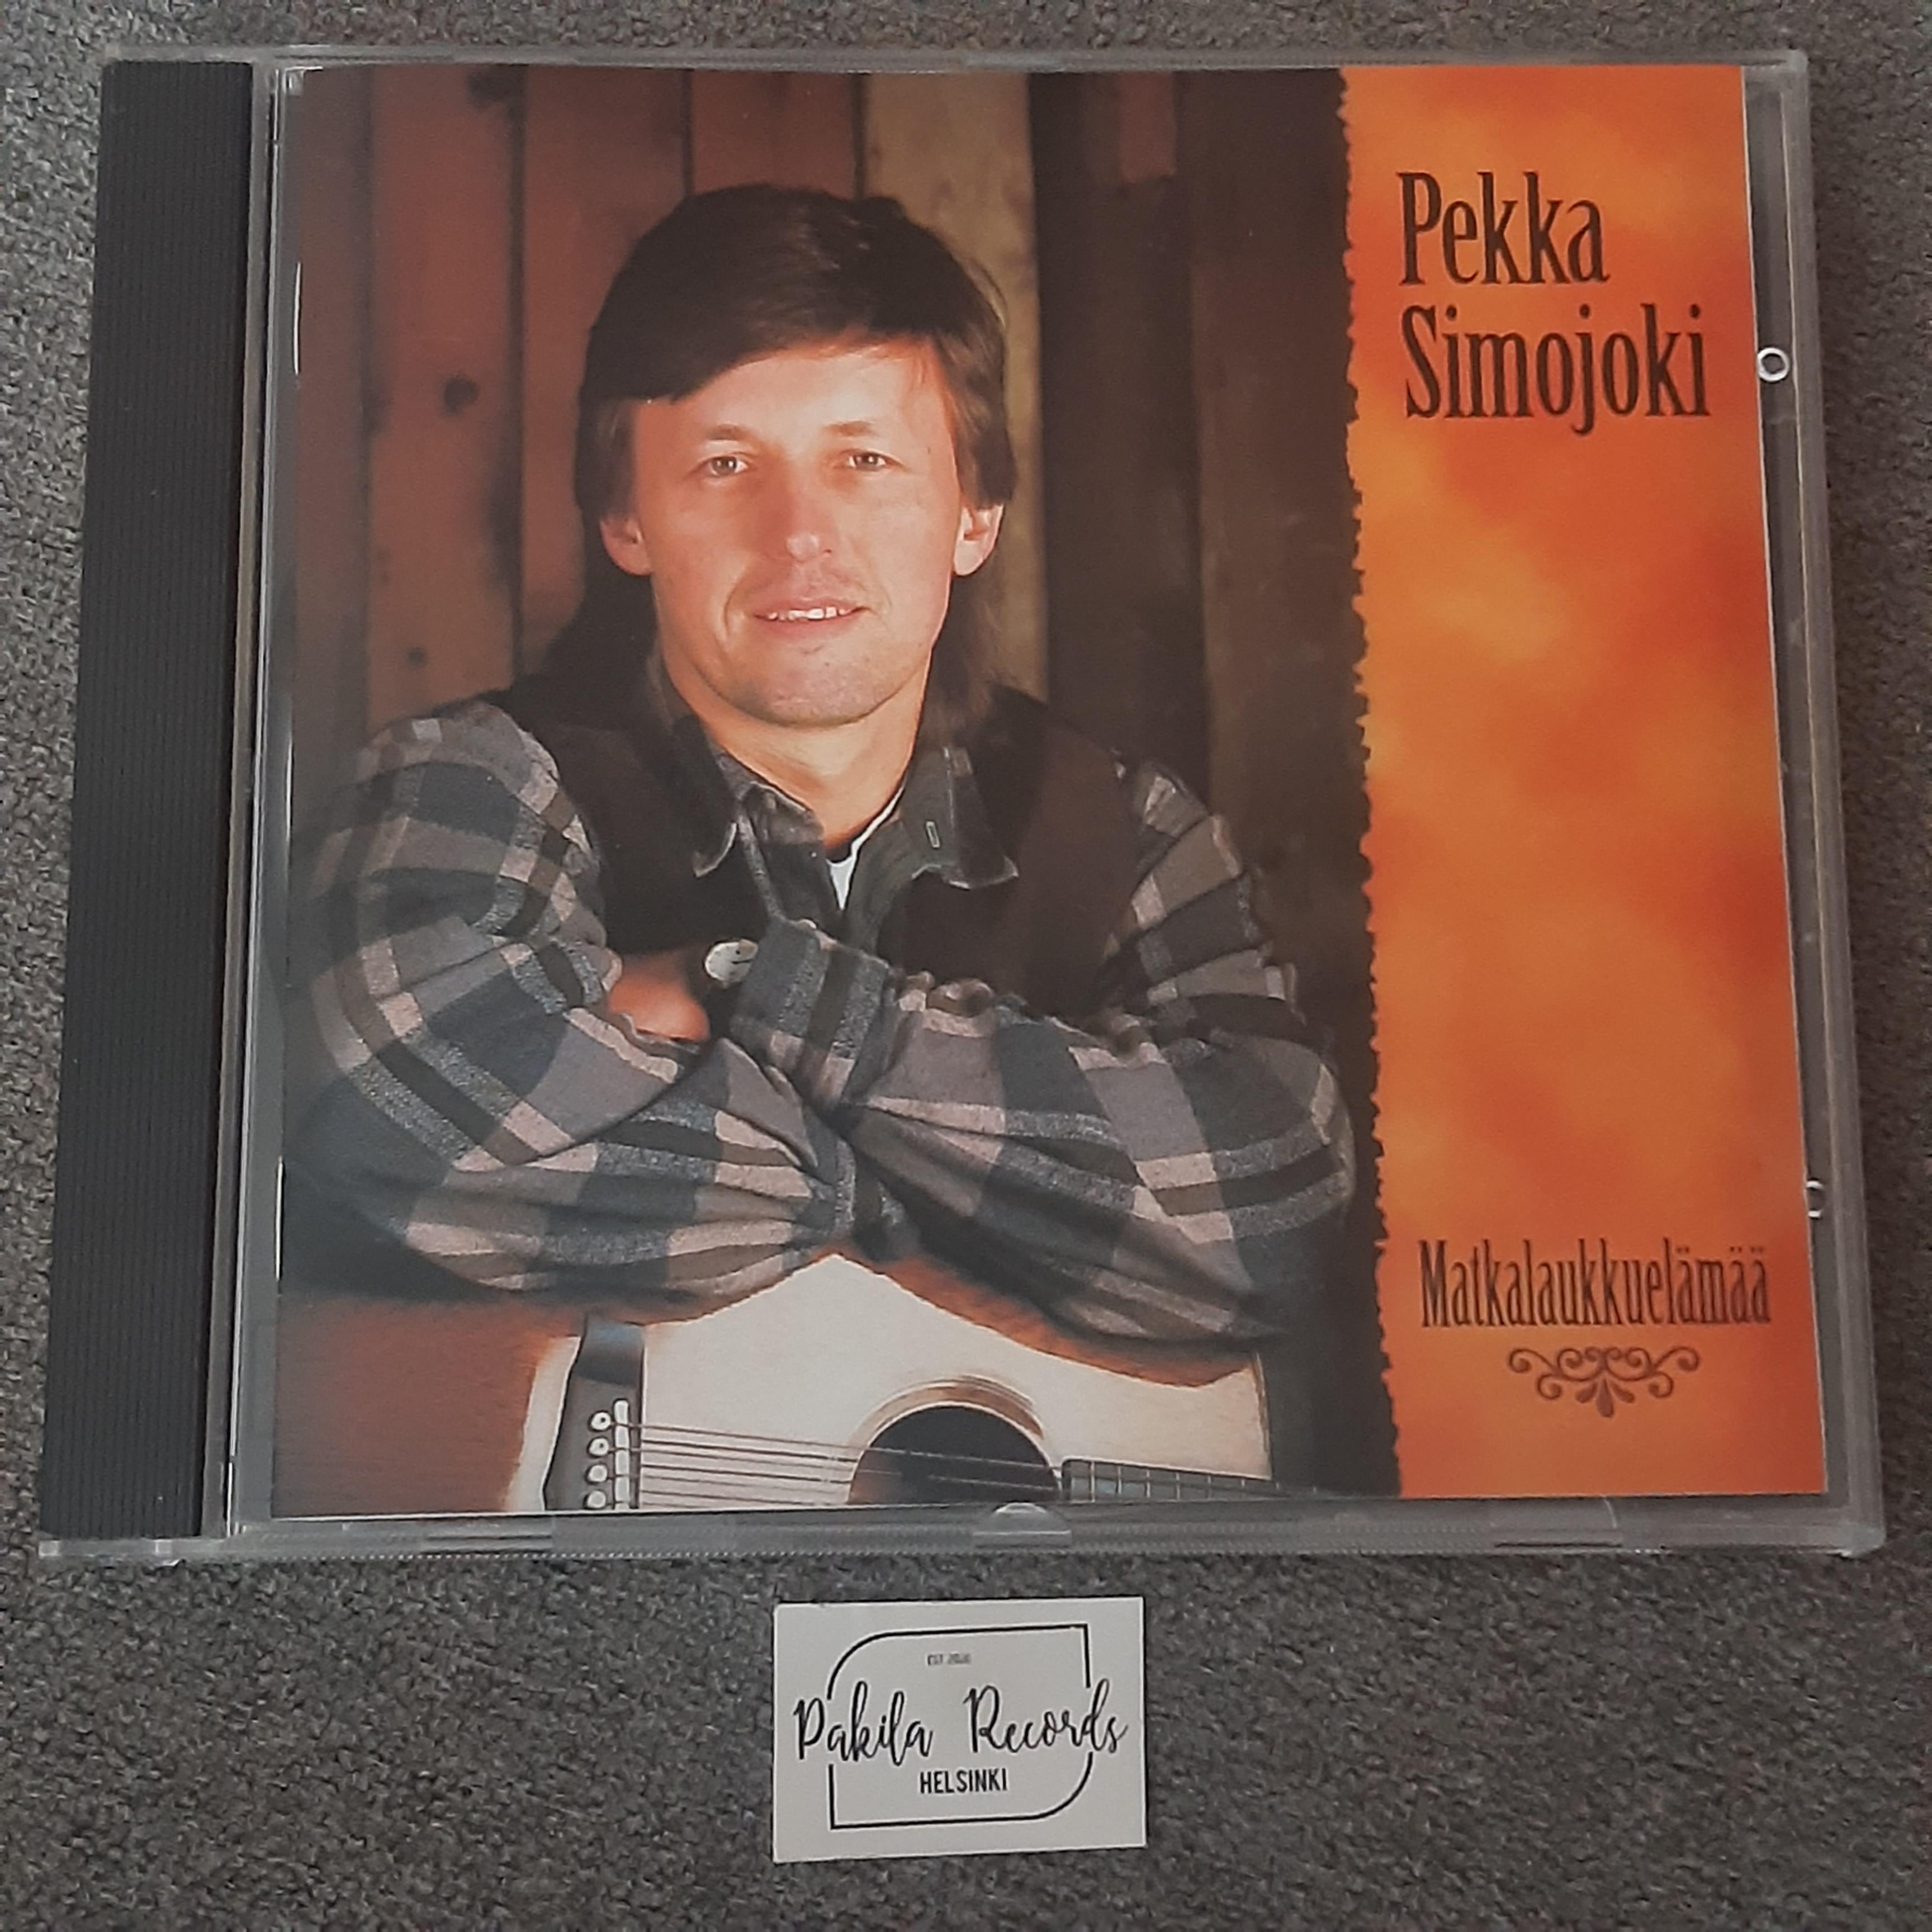 Pekka Simojoki - Matkalaukkuelämää - CD (käytetty)